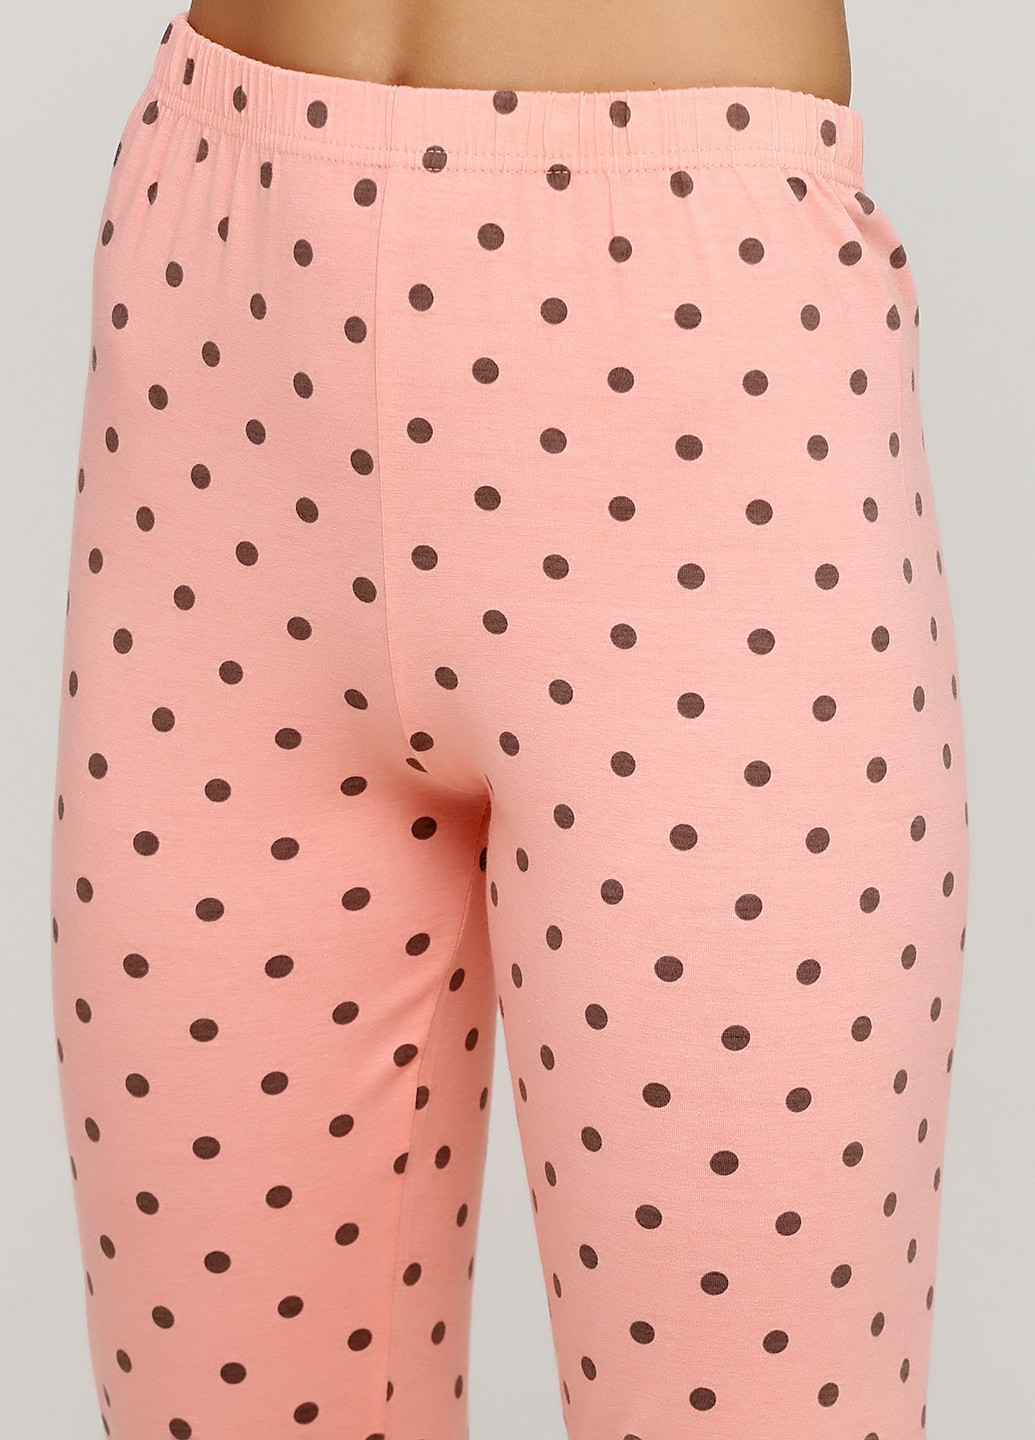 Розово-коричневая всесезон комплект плотный трикотаж (свитшот, брюки) Sude